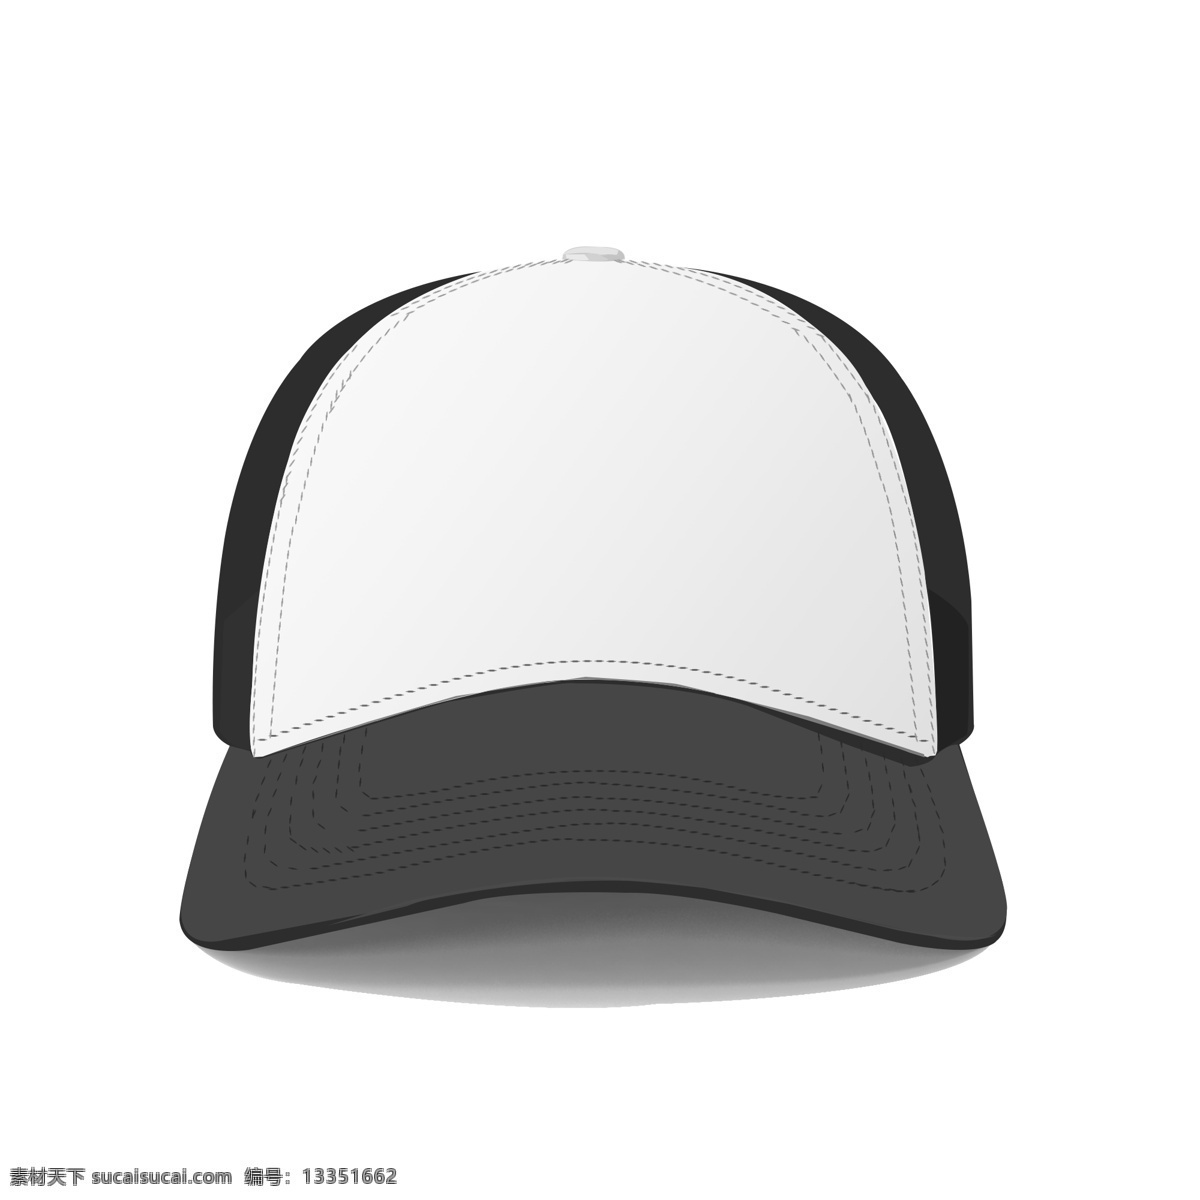 手绘 黑白 棒球帽 手绘帽子 手绘棒球帽 手绘黑白帽子 帽子